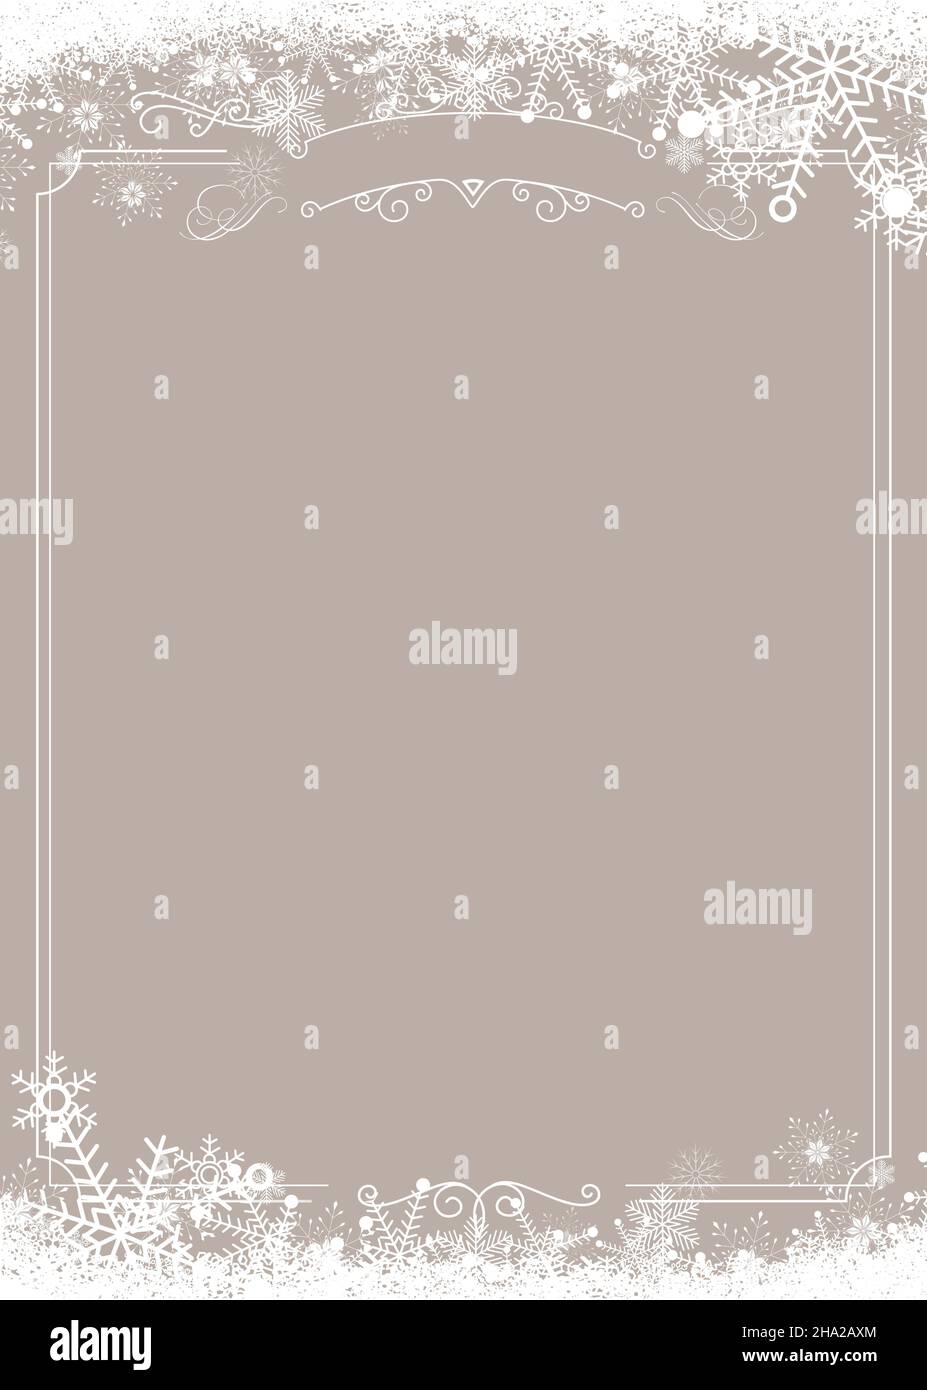 Vertikales Cafe-Menü in Größe A4 - Winter-Schneeflocken-Grenze und weihnachtlicher beigefarbener Hintergrund Stock Vektor